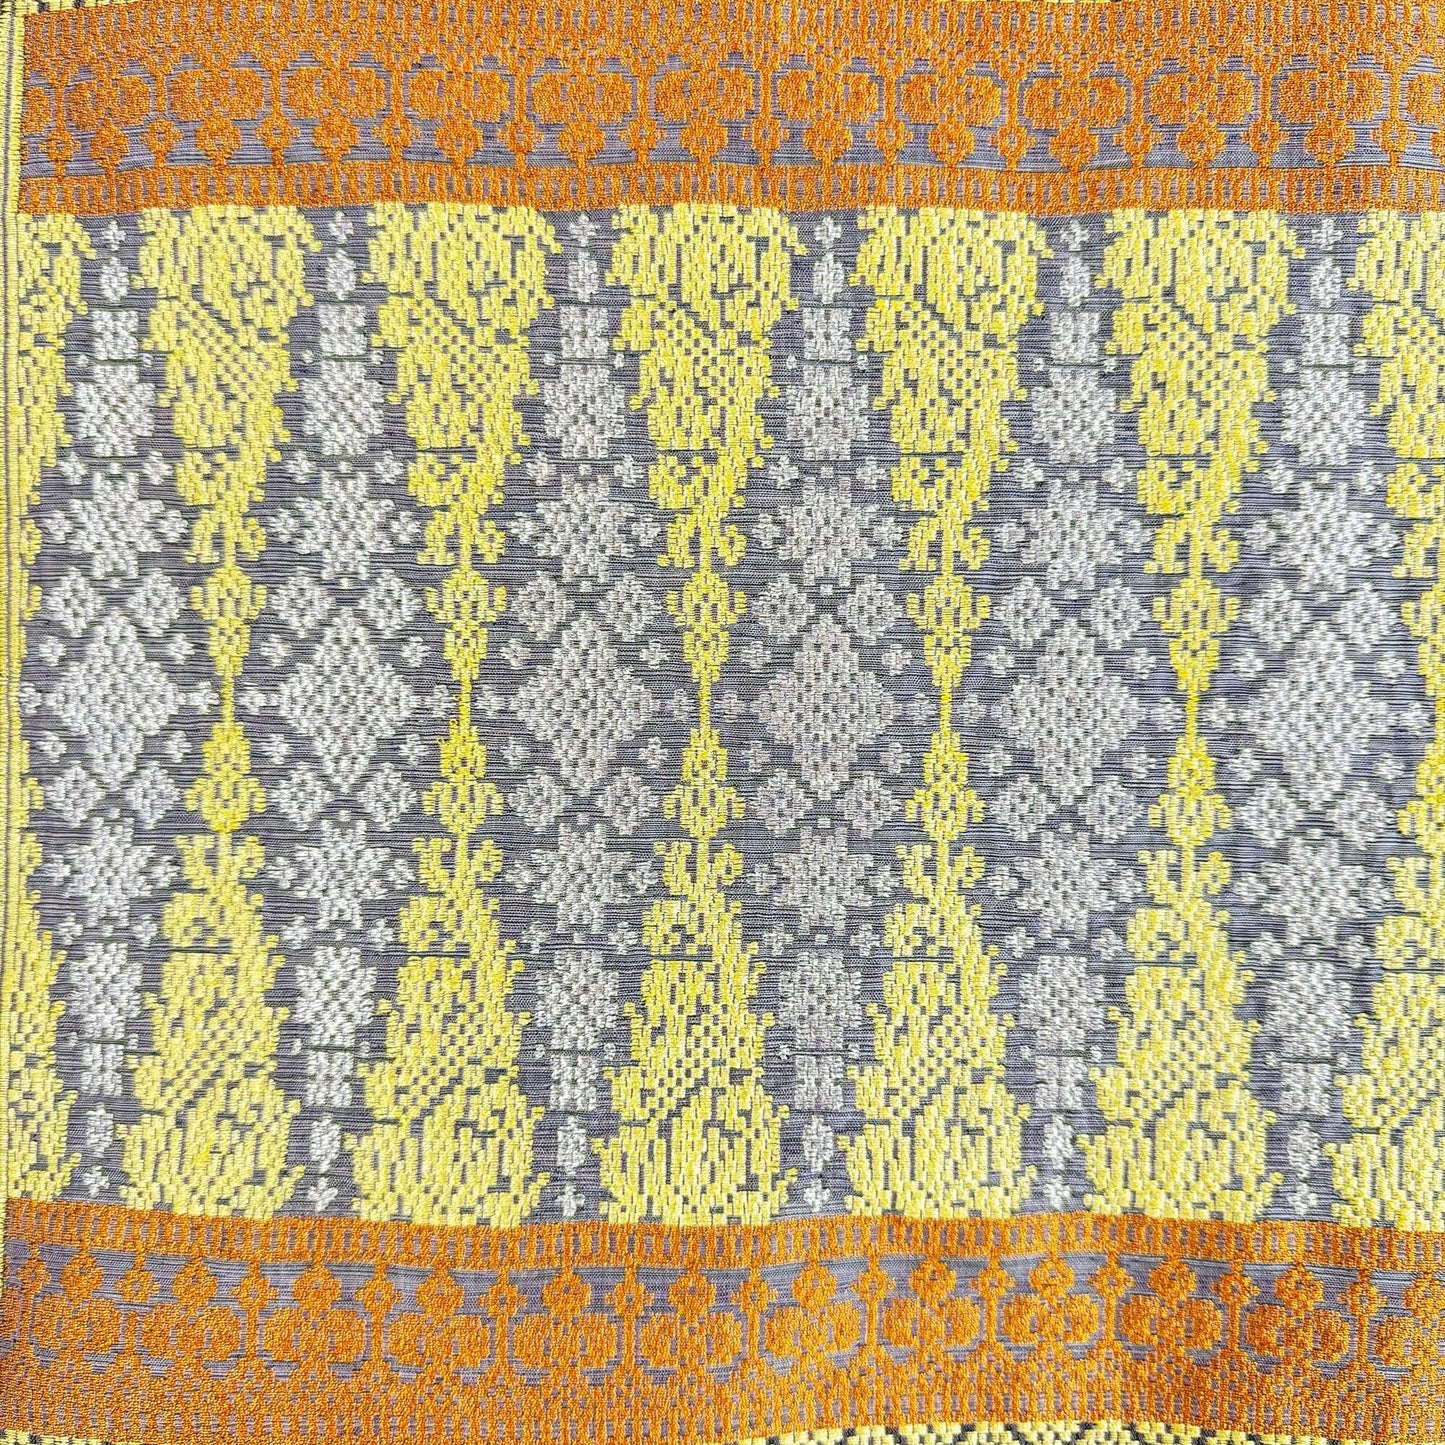 Indera Kayangan handwoven silk songket sampin textile